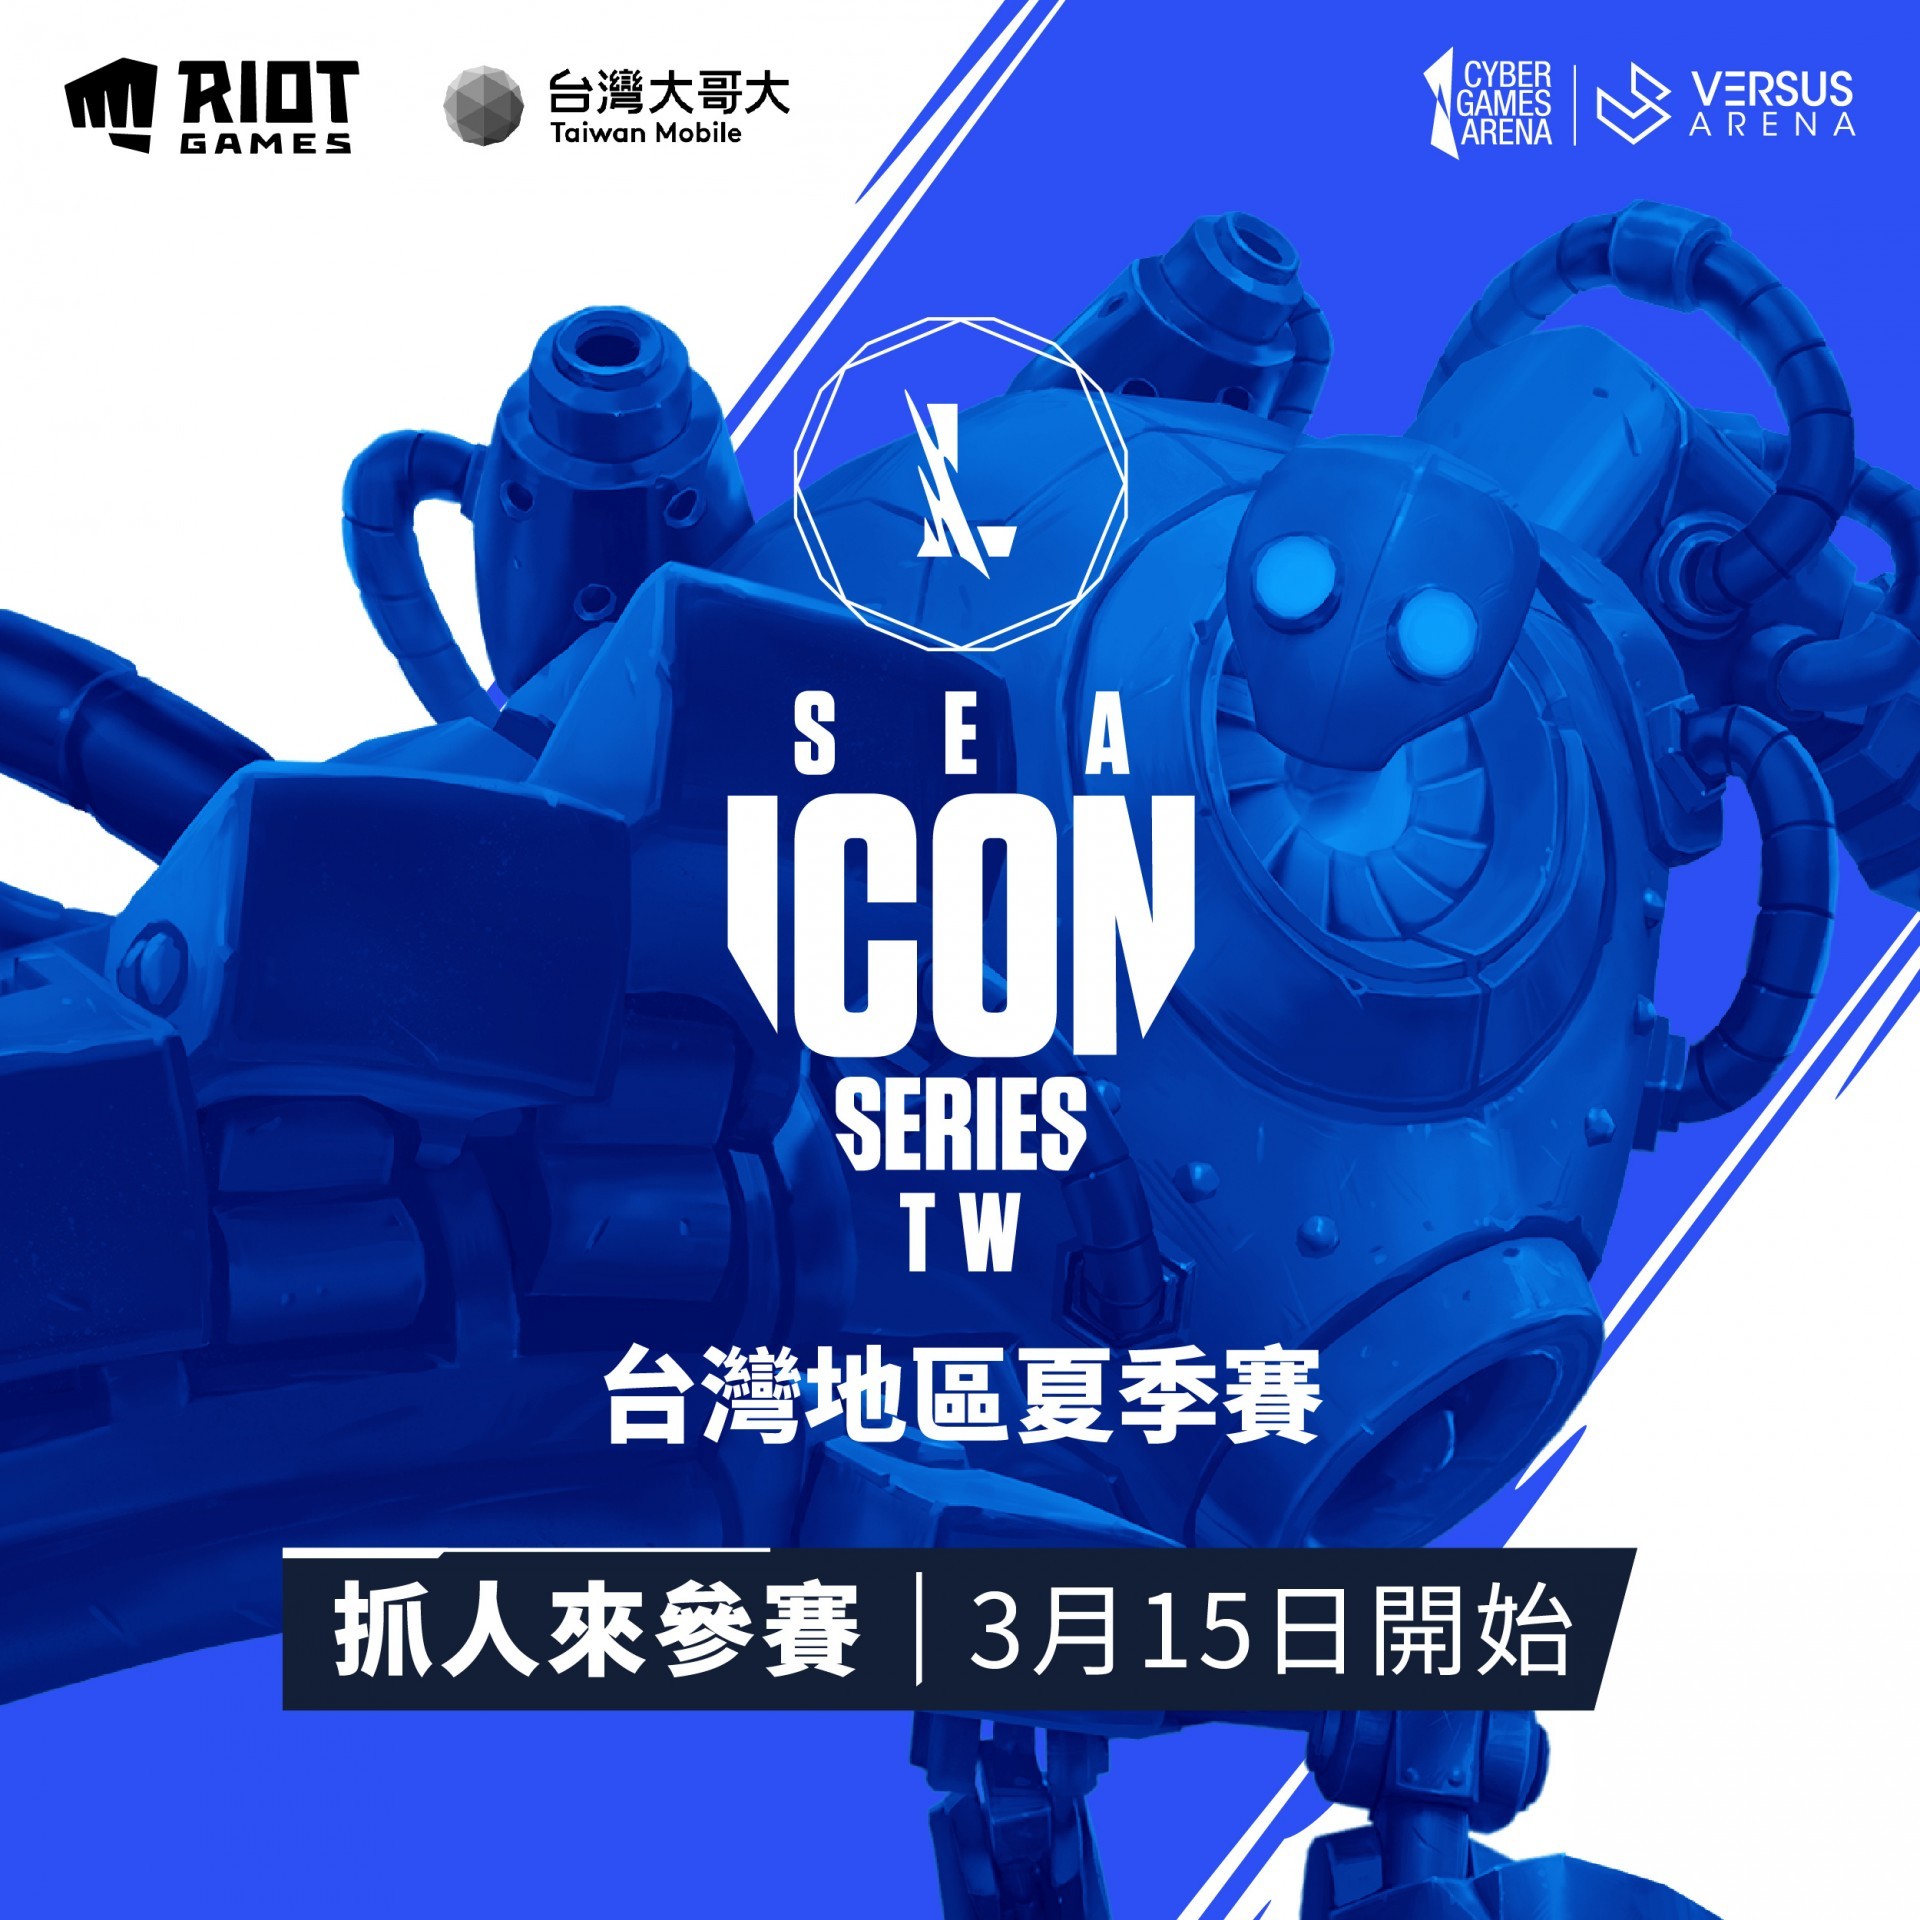 《英雄联盟：激斗峡谷》东南亚 Icon Series 夏季赛即日起开放报名